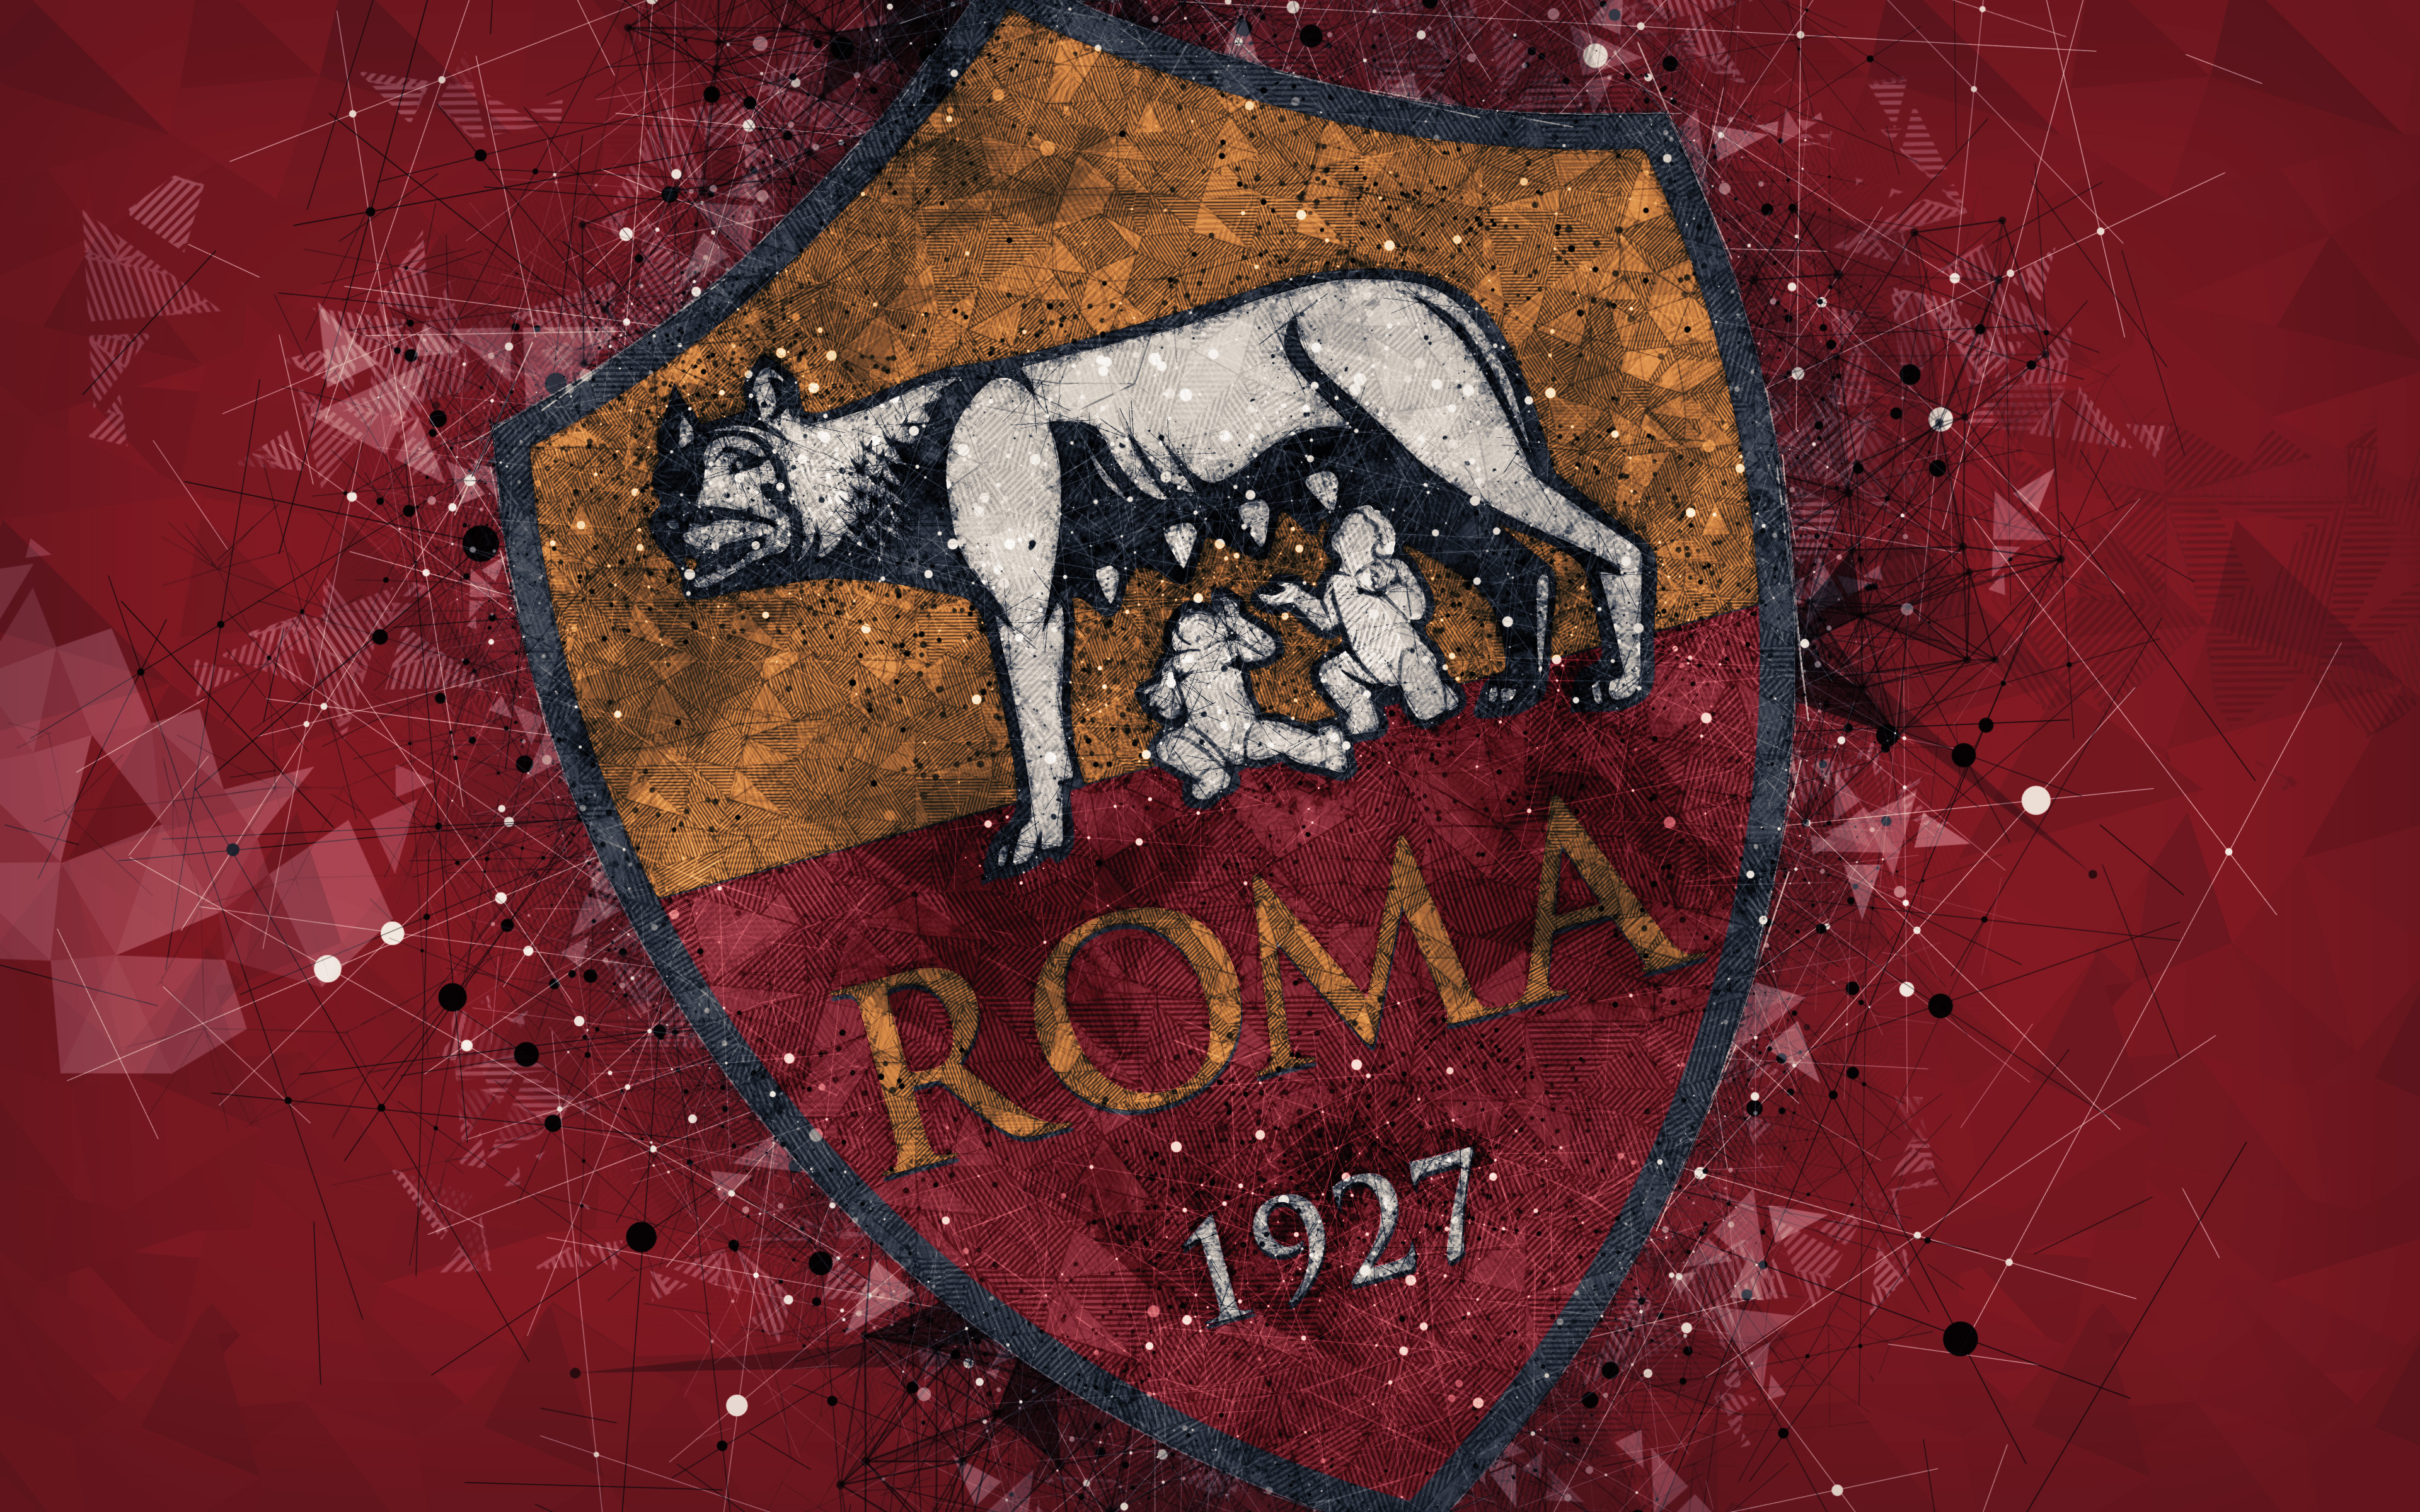 a s roma, sports, logo, soccer